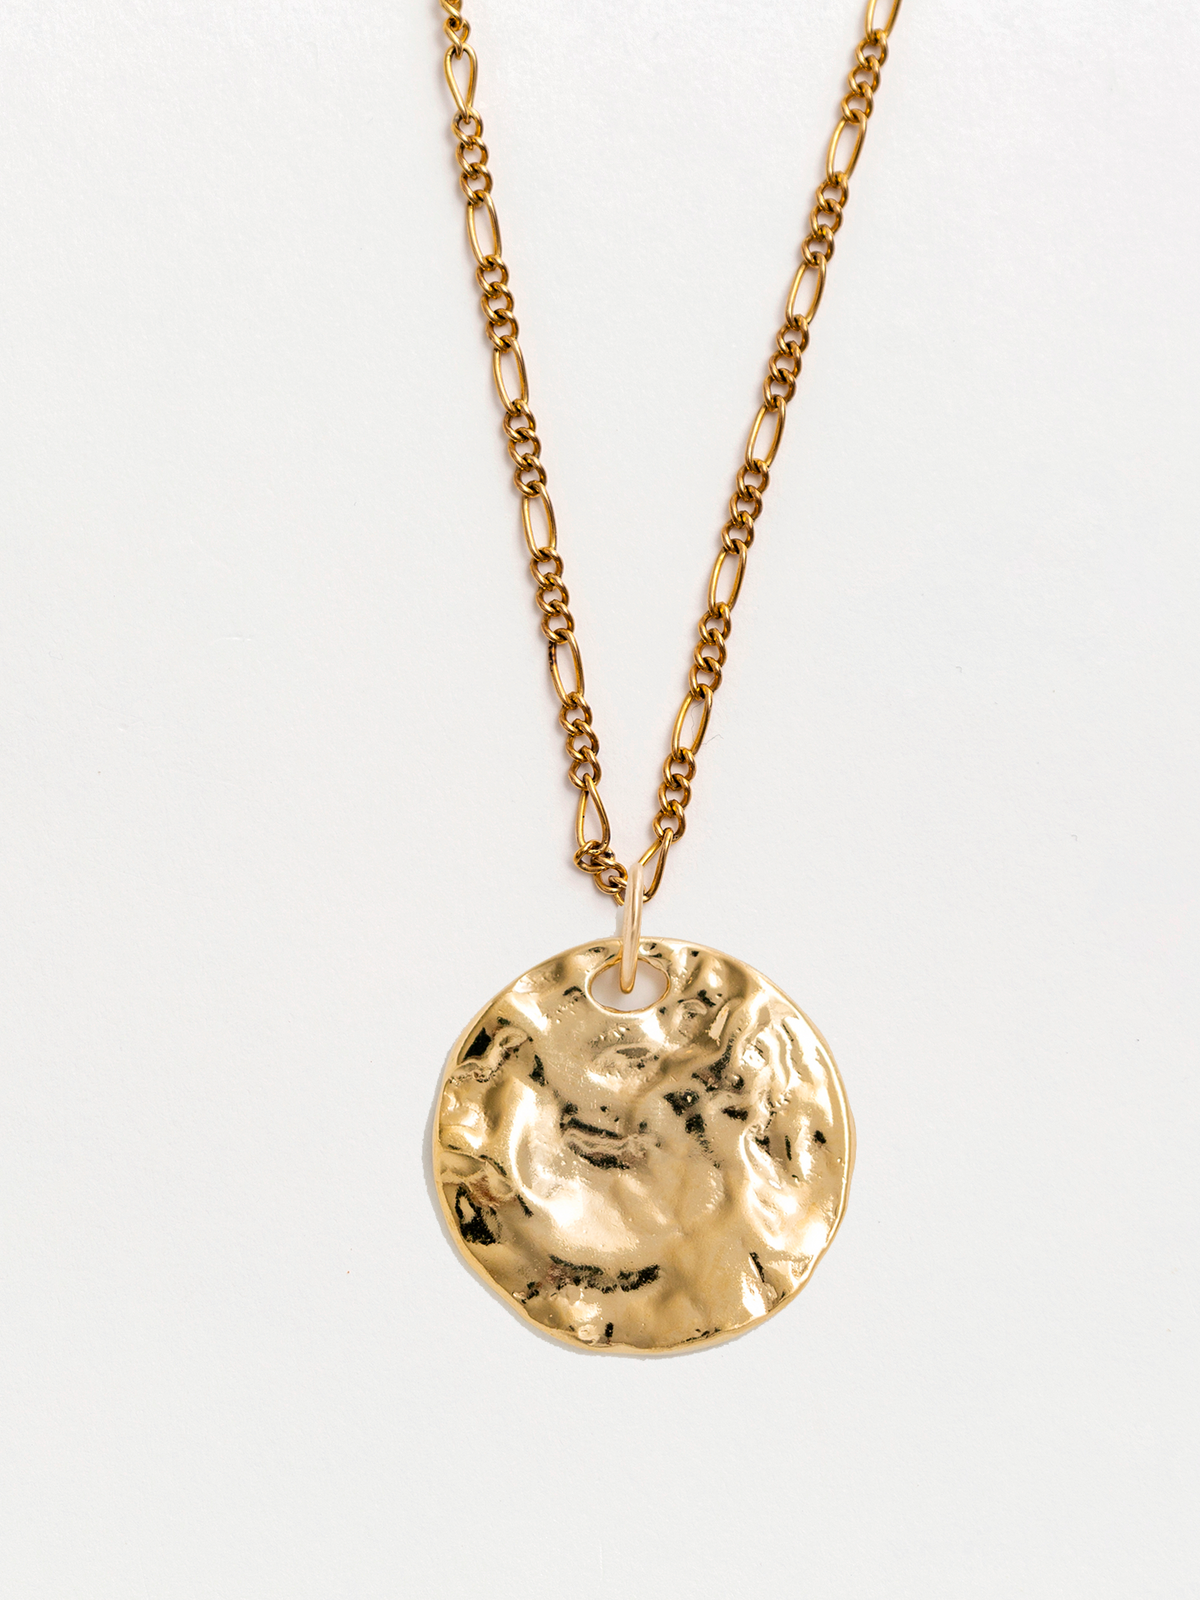 Danielle Gold Pendant Necklace